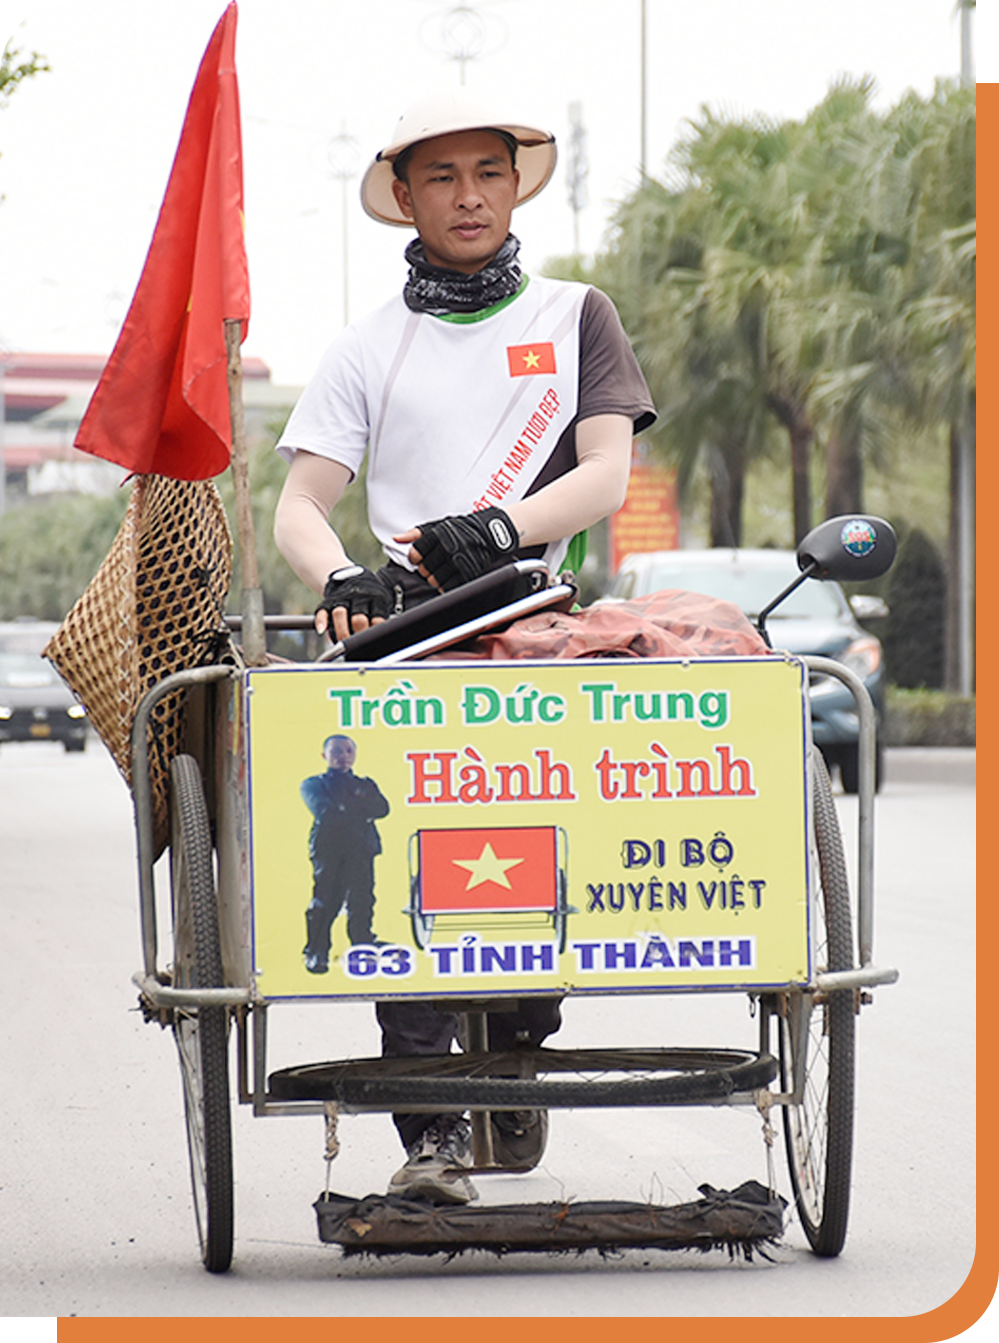 Hành trình 2 năm đi bộ hút đinh xuyên Việt của chàng trai xứ Nghệ - 7